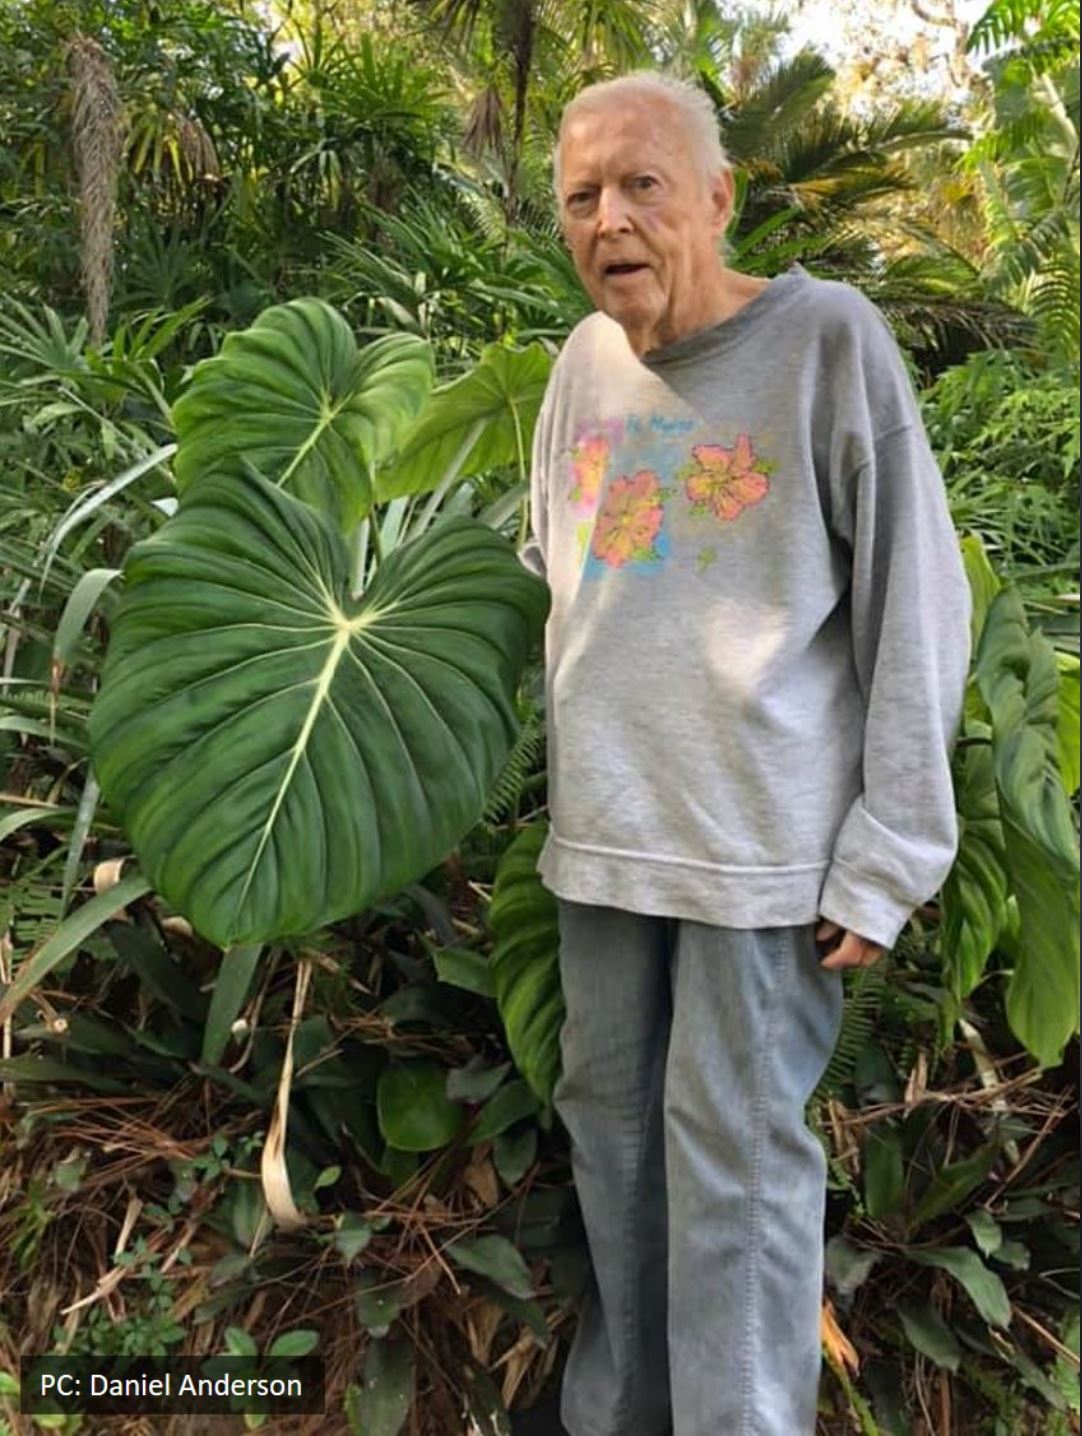 Ảnh chụp John Banta trong khu vườn của ông (vườn Alva) bên cạnh một trong những cây do chính ông lai tạo ra: Philodendron "Dean McDowell" vào năm 2020